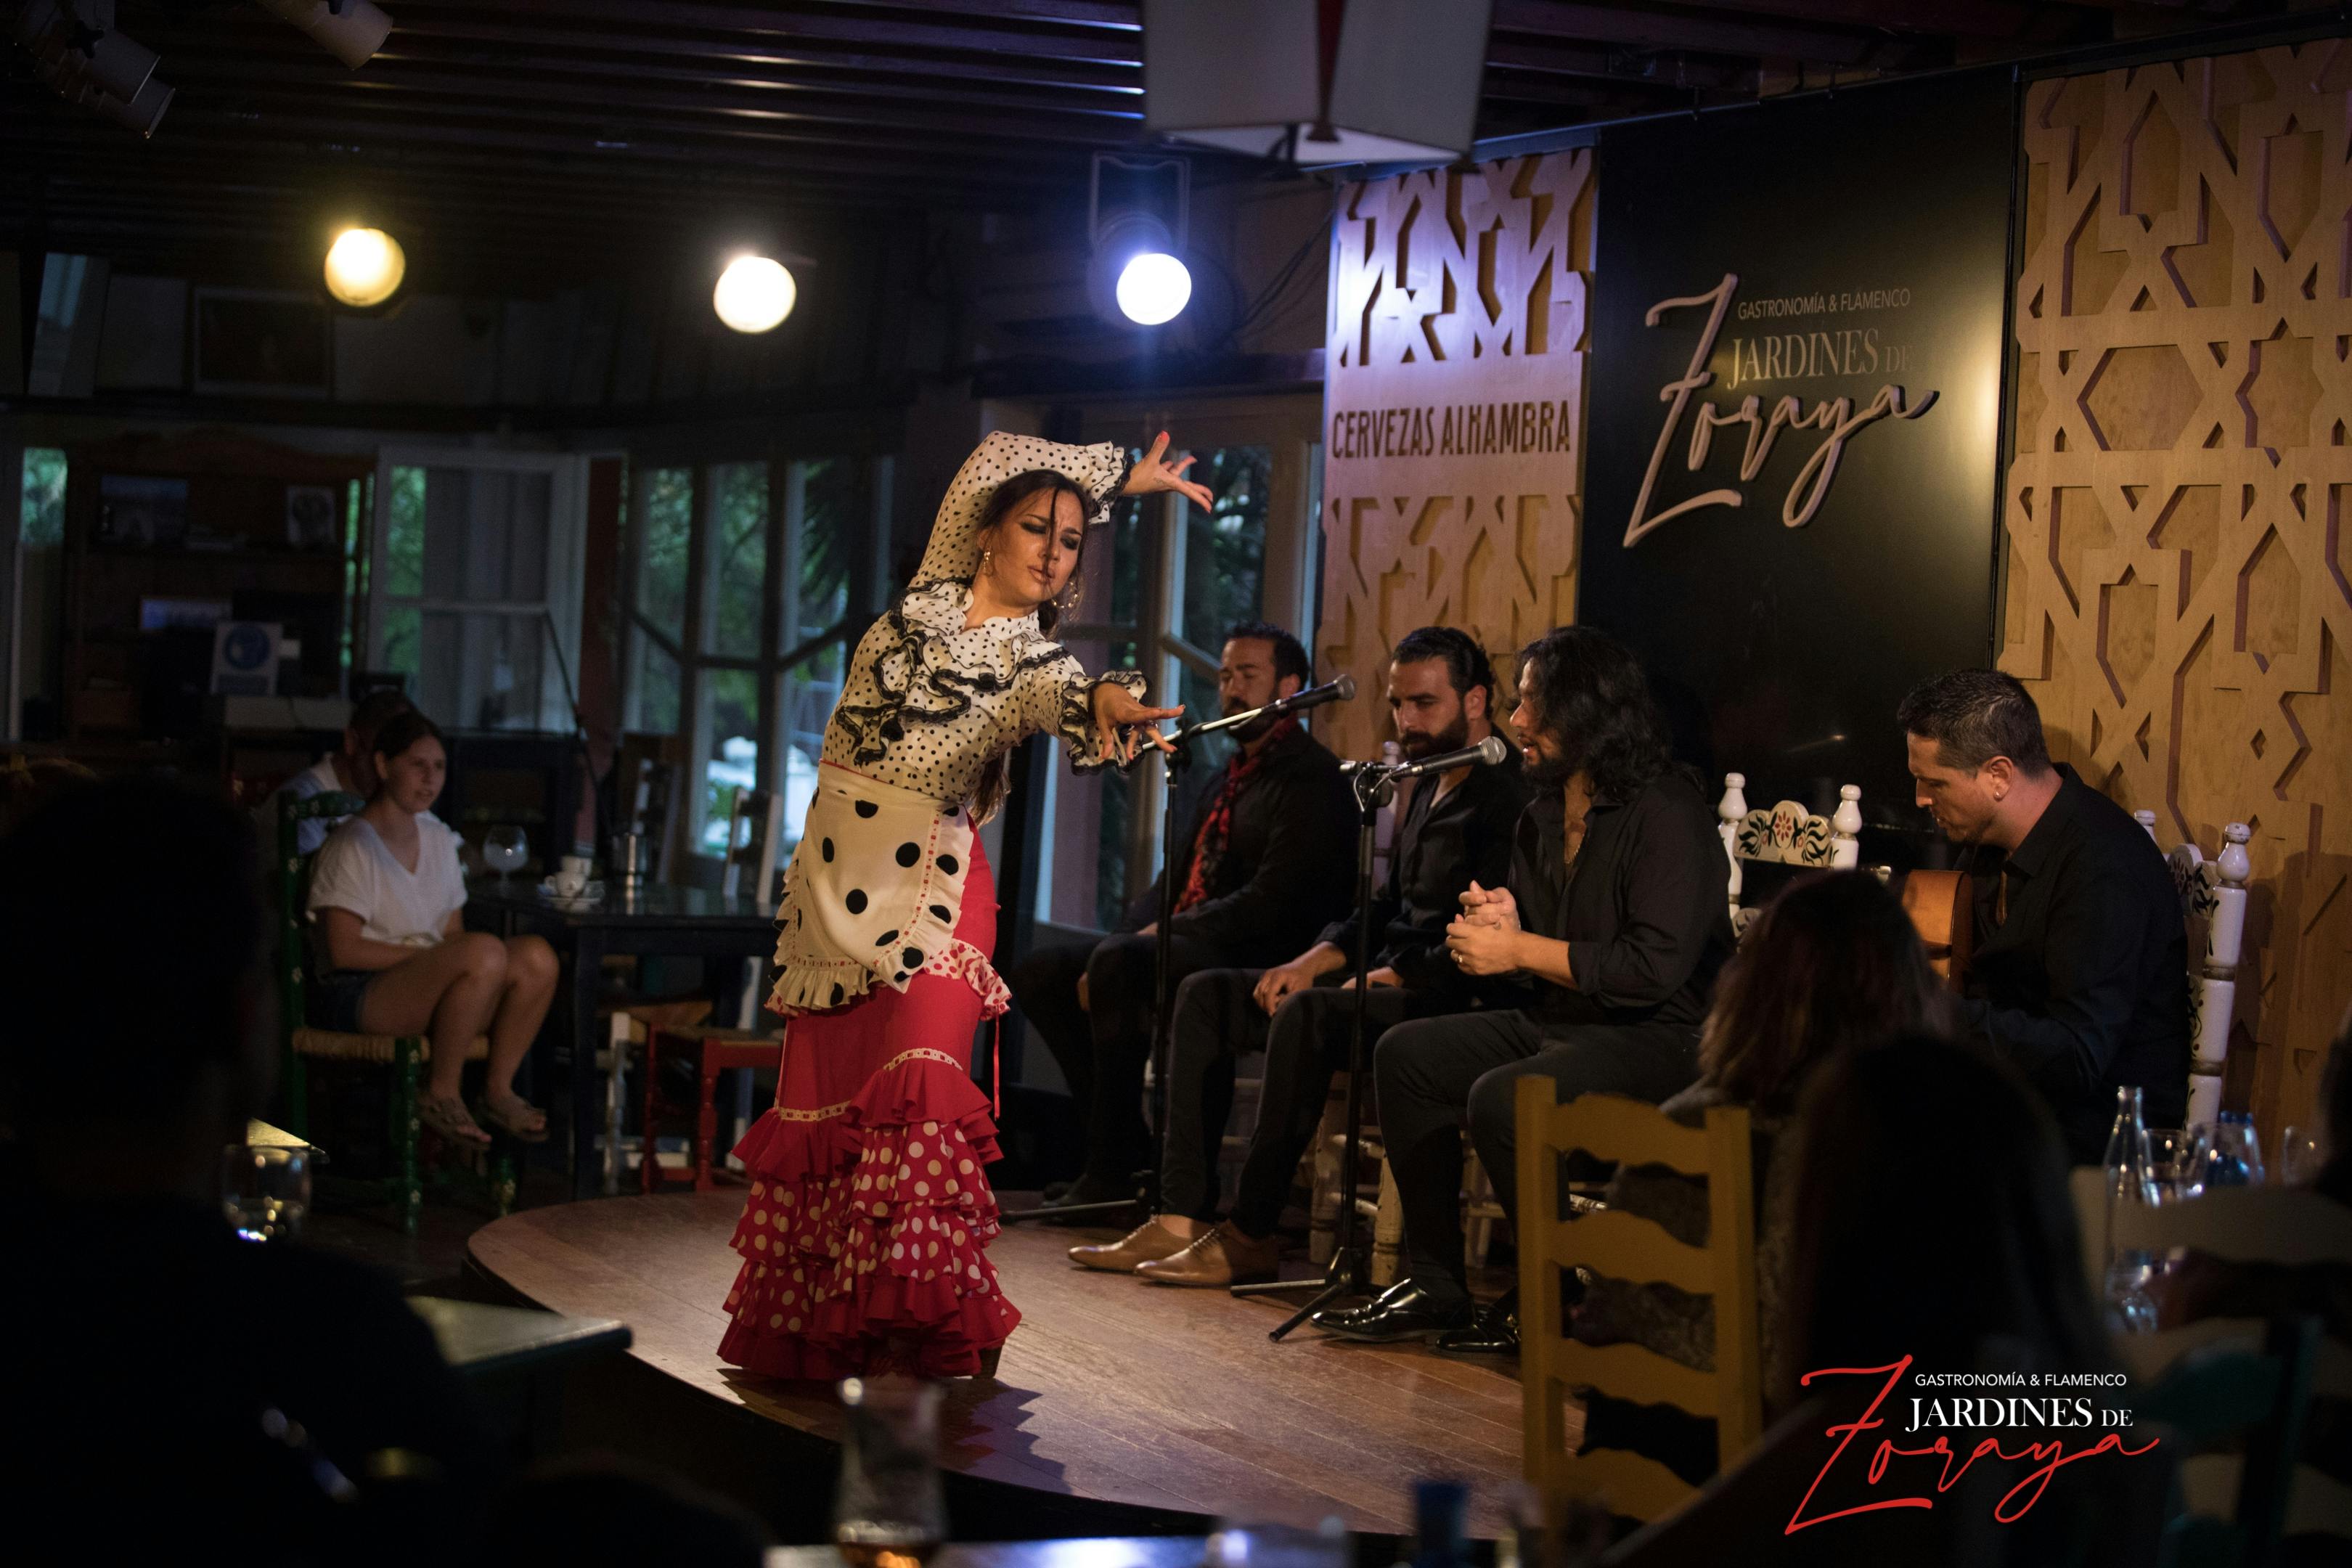 Billets pour le spectacle de flamenco aux Jardines de Zoraya